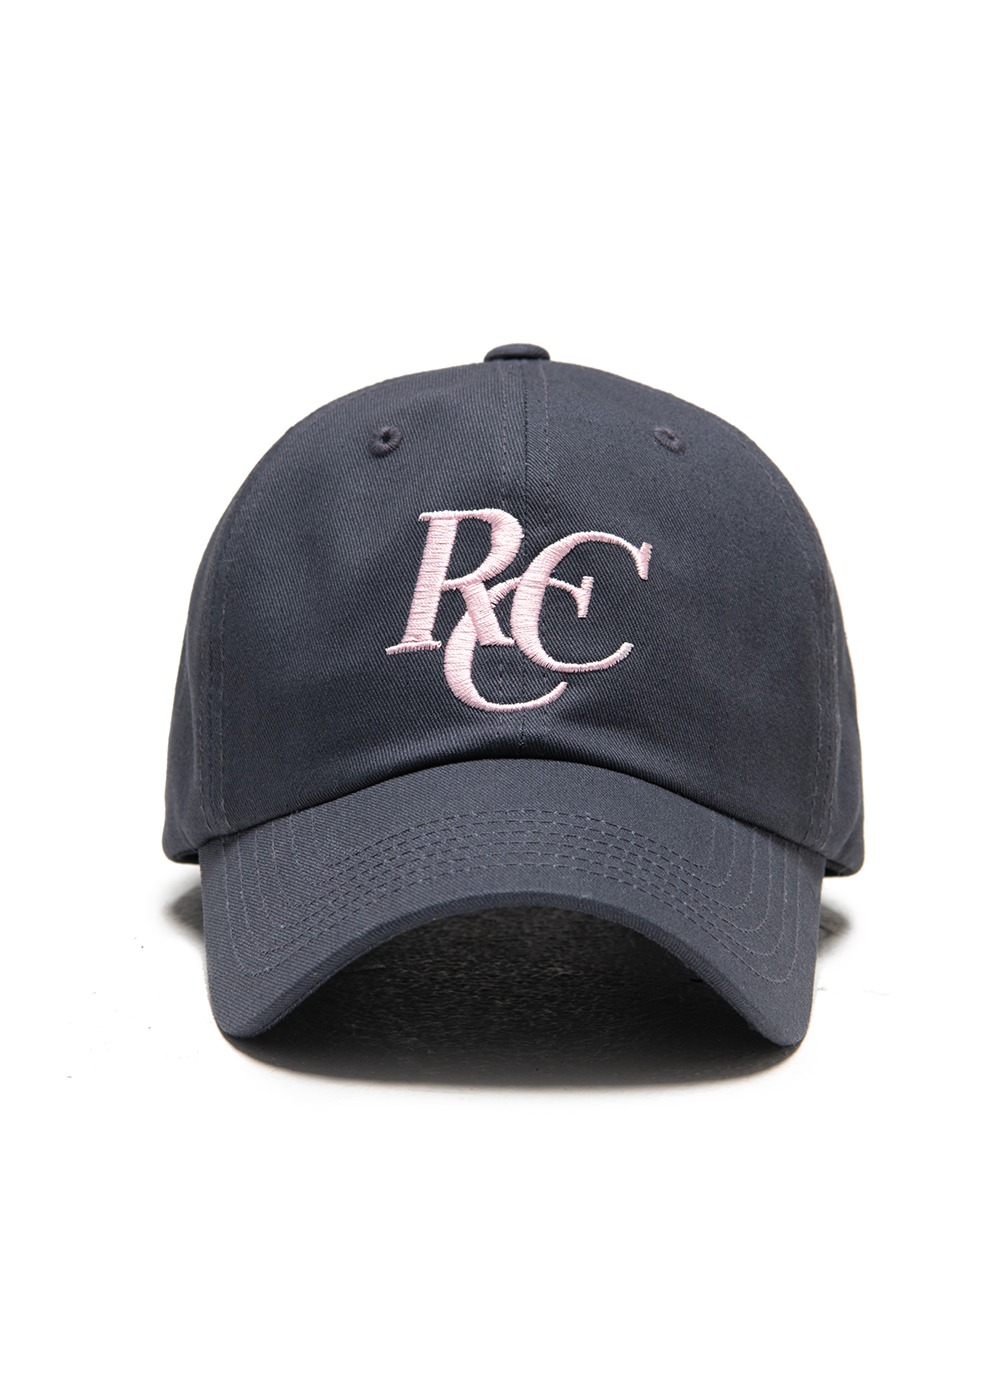 RCC Logo ball cap [CHARCOAL]RCC Logo ball cap [CHARCOAL]자체브랜드